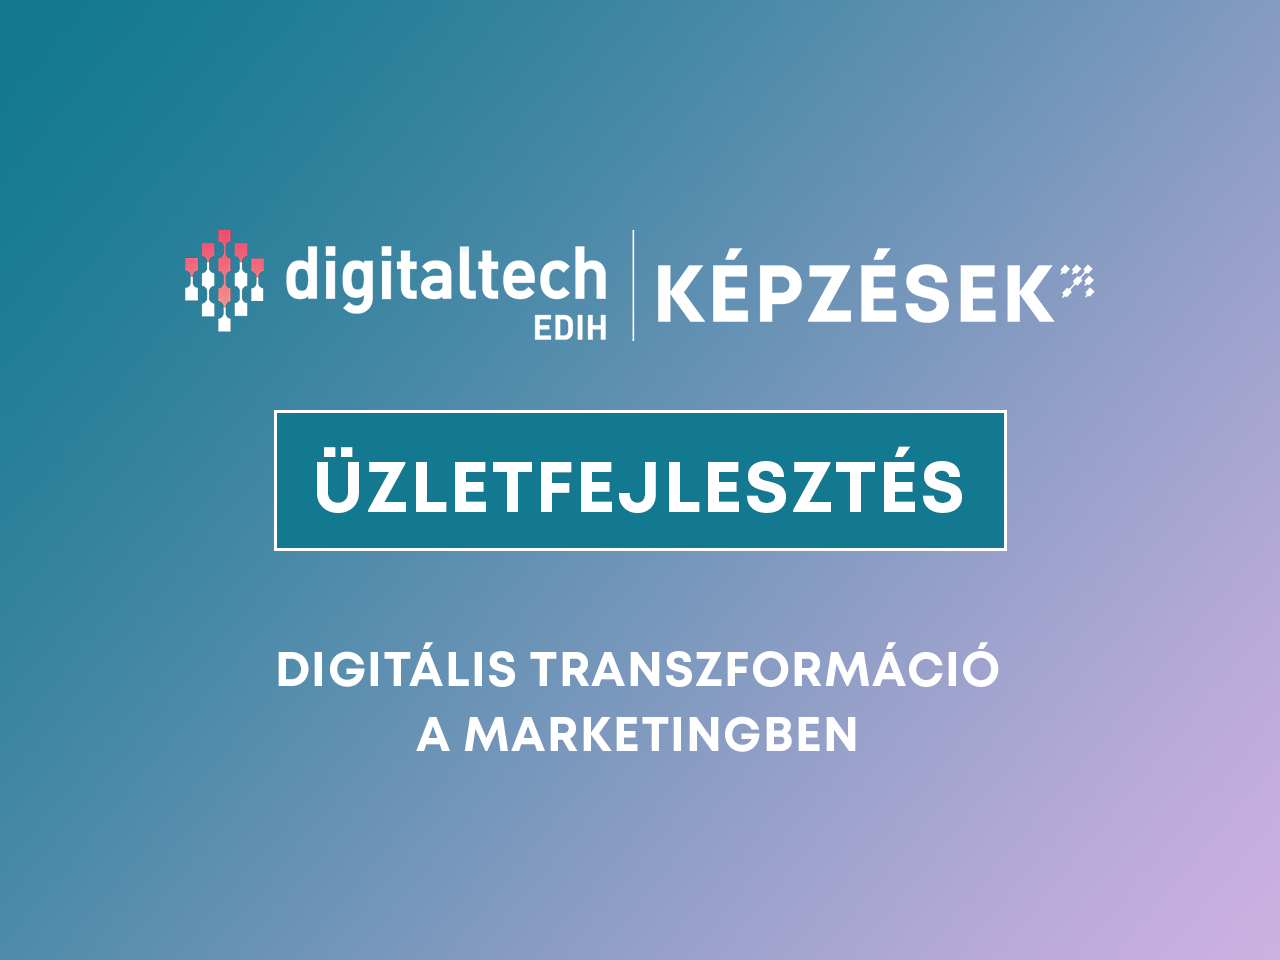 digitalis marketing transzformáció képzés digitaltech edih